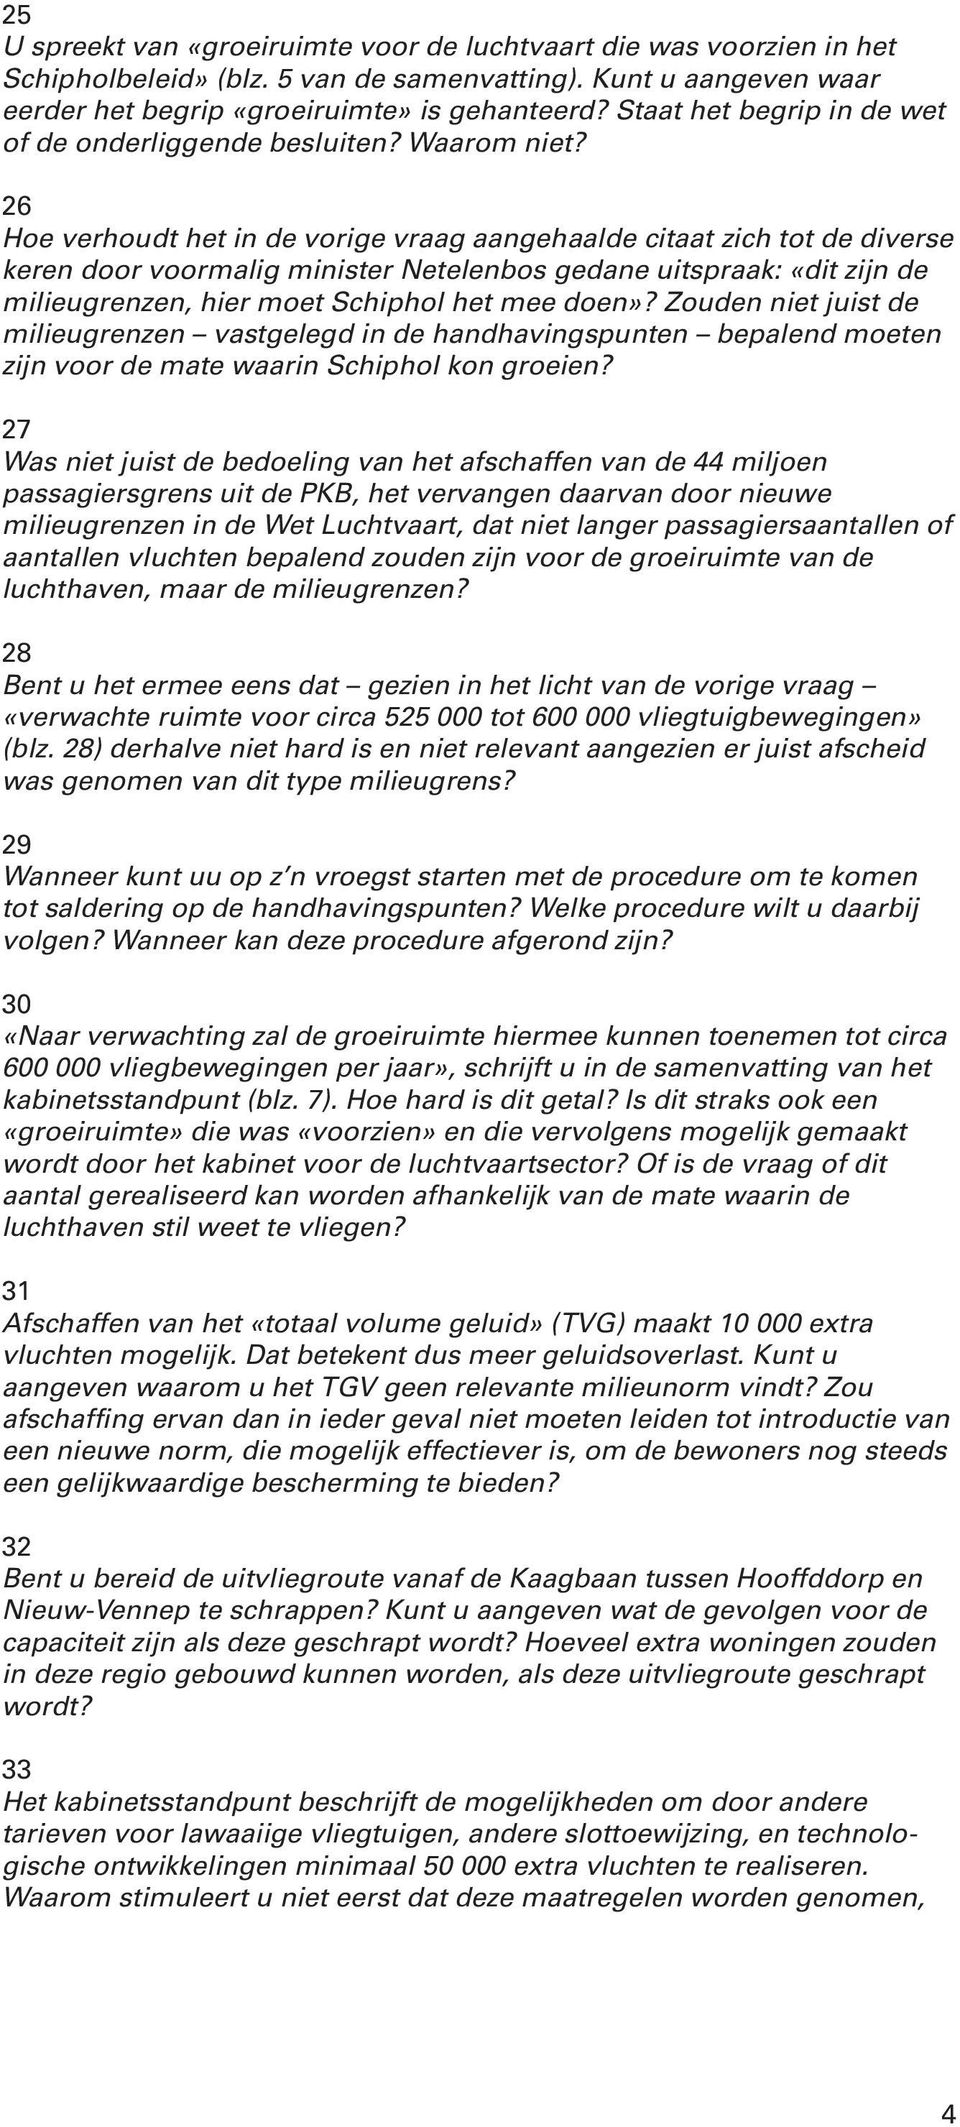 26 Hoe verhoudt het in de vorige vraag aangehaalde citaat zich tot de diverse keren door voormalig minister Netelenbos gedane uitspraak: «dit zijn de milieugrenzen, hier moet Schiphol het mee doen»?